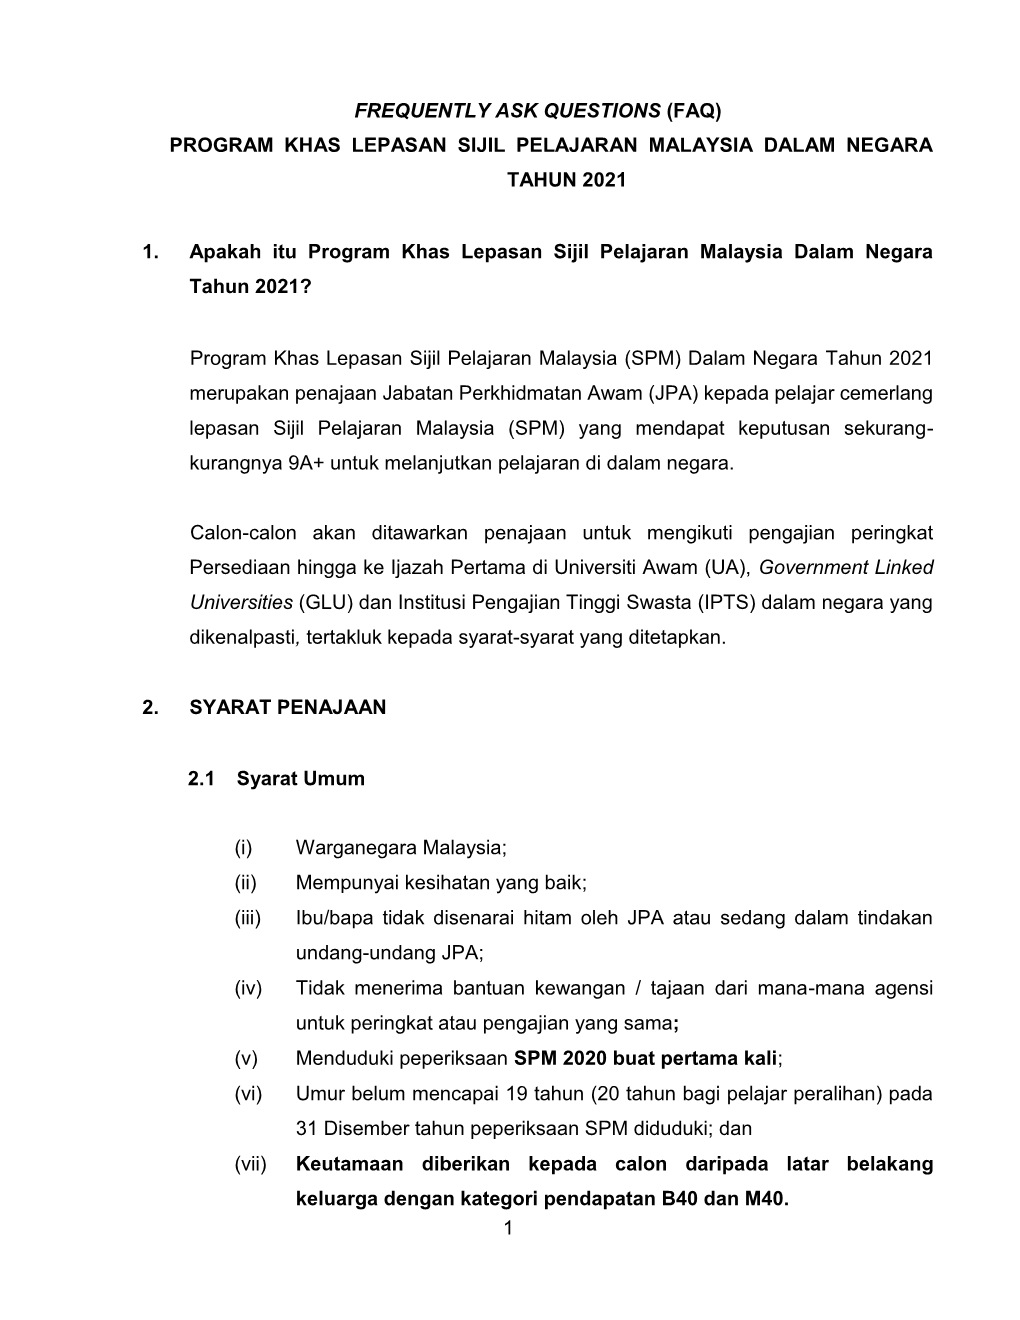 (Faq) Program Khas Lepasan Sijil Pelajaran Malaysia Dalam Negara Tahun 2021